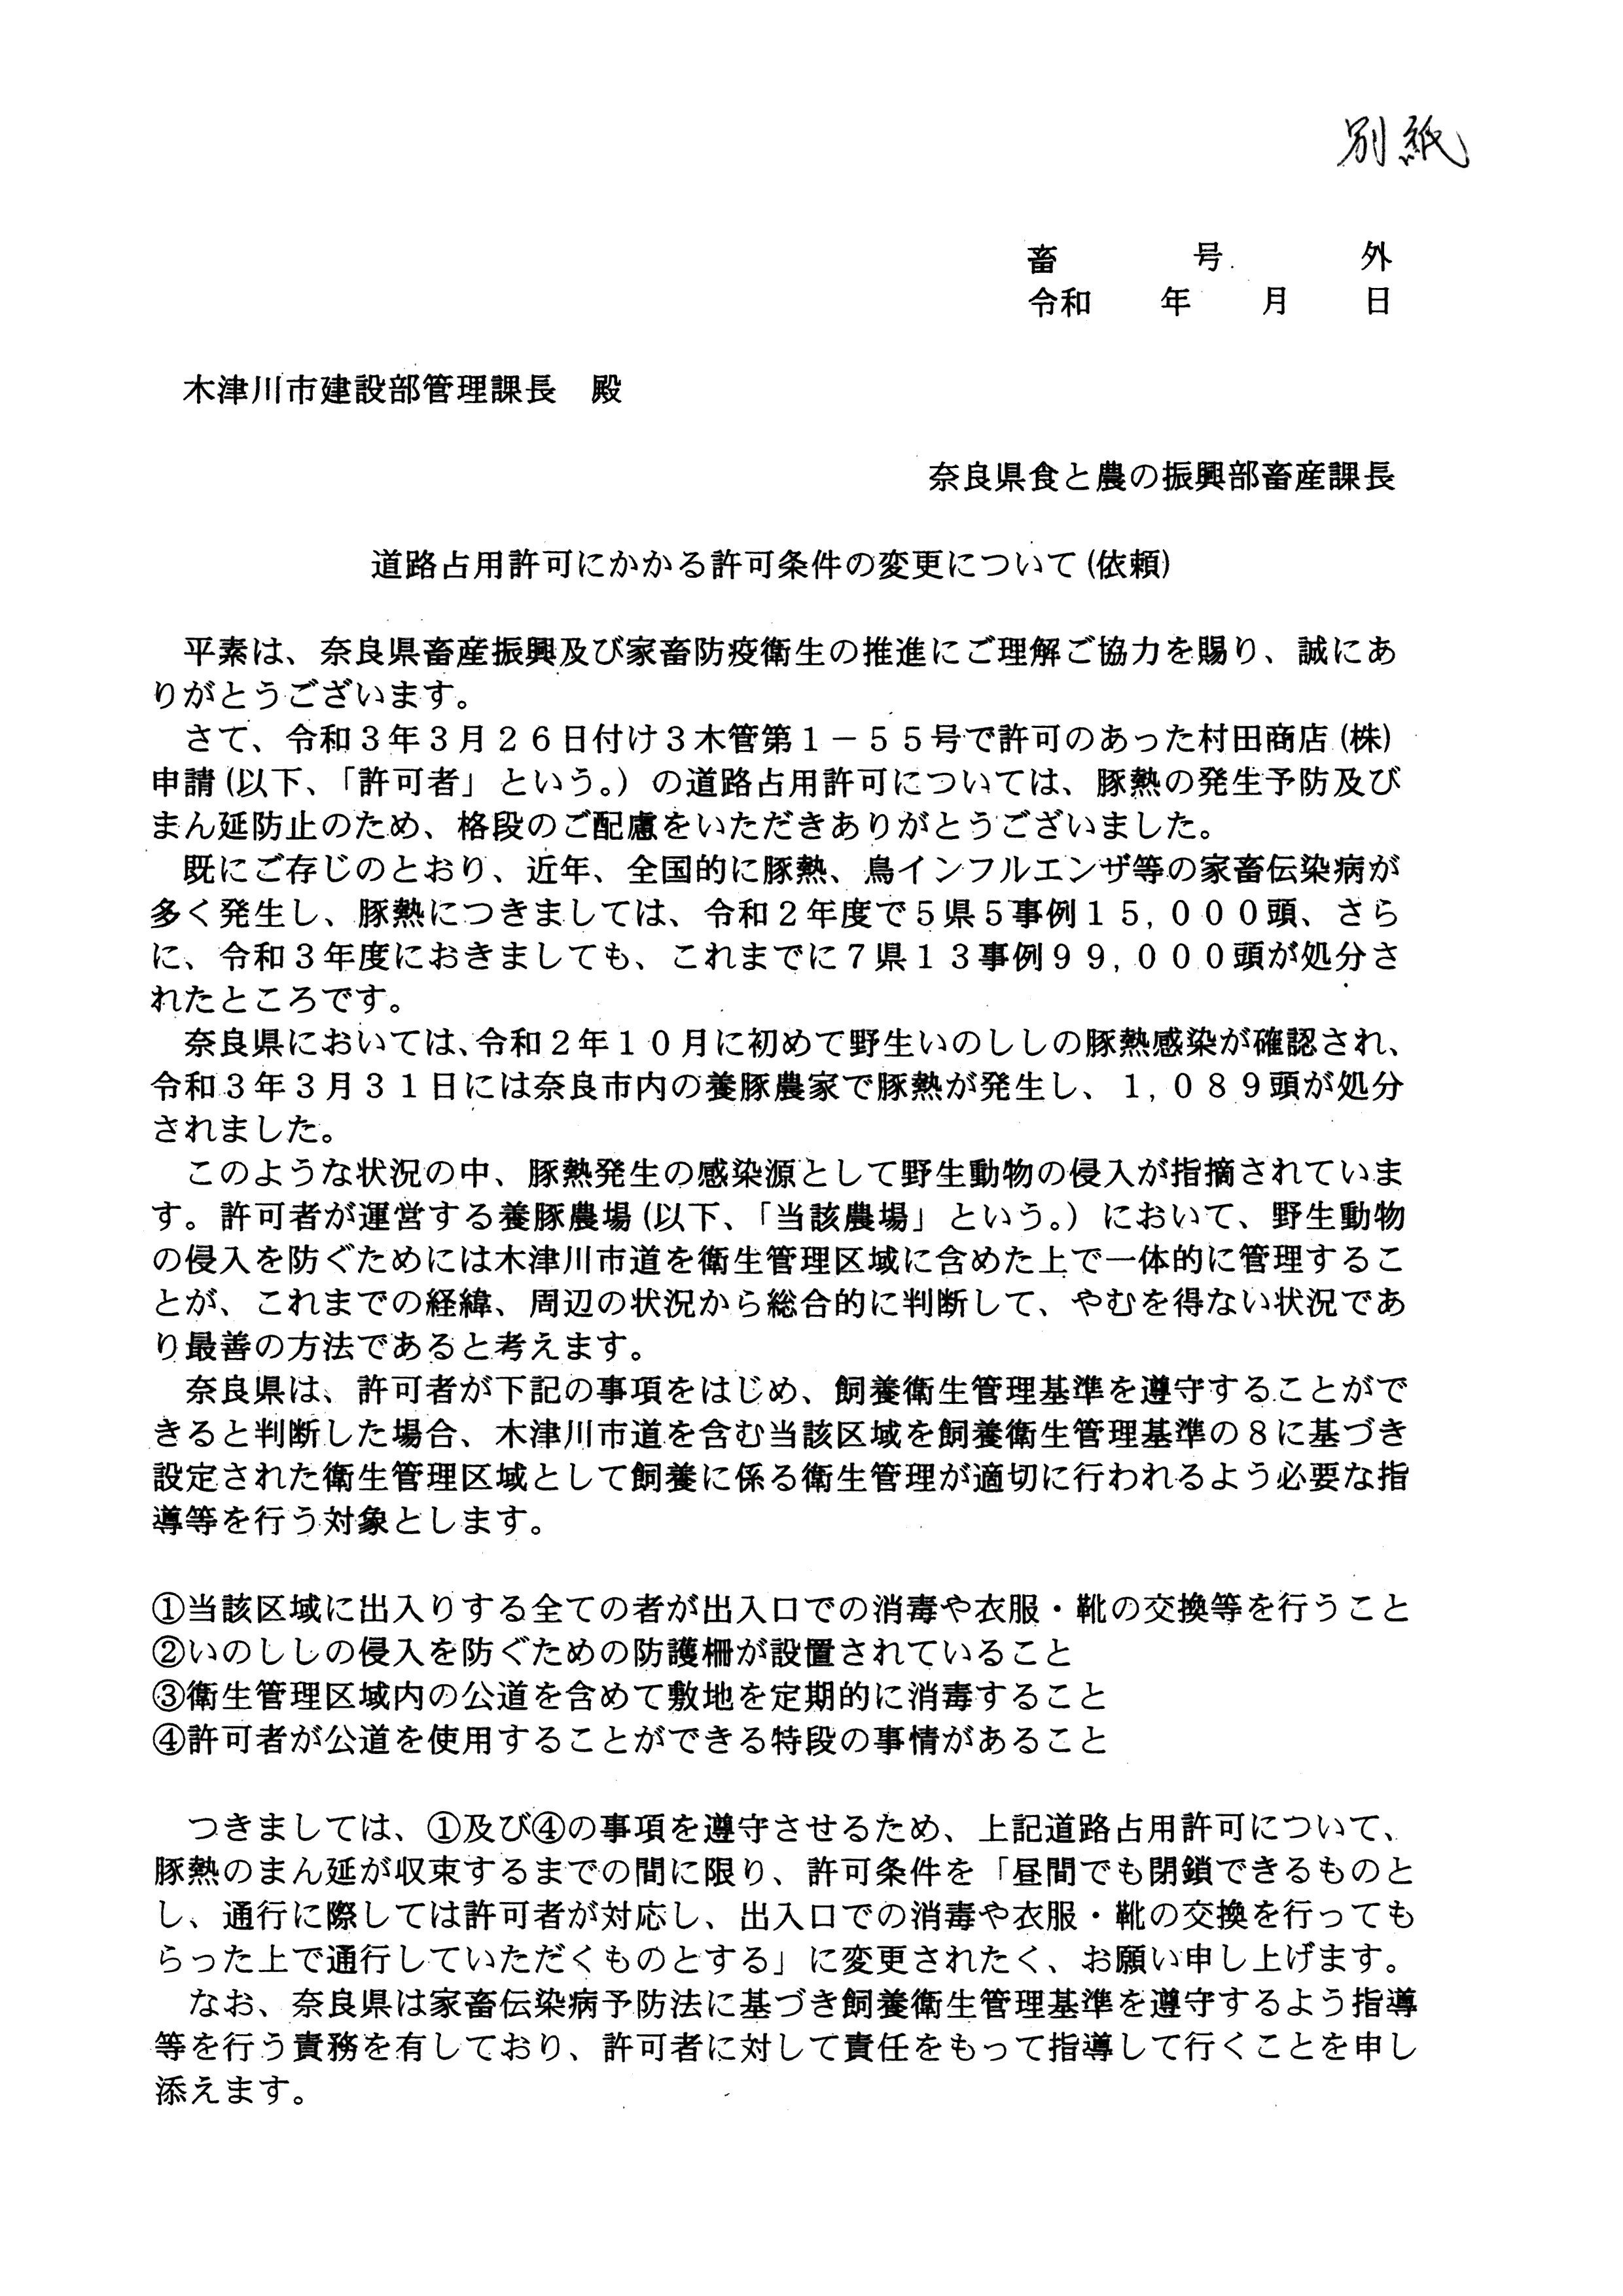 令和4年3月22日-（株）村田商店に対する市道（加2092号）占用許可の3者協議-05-別紙